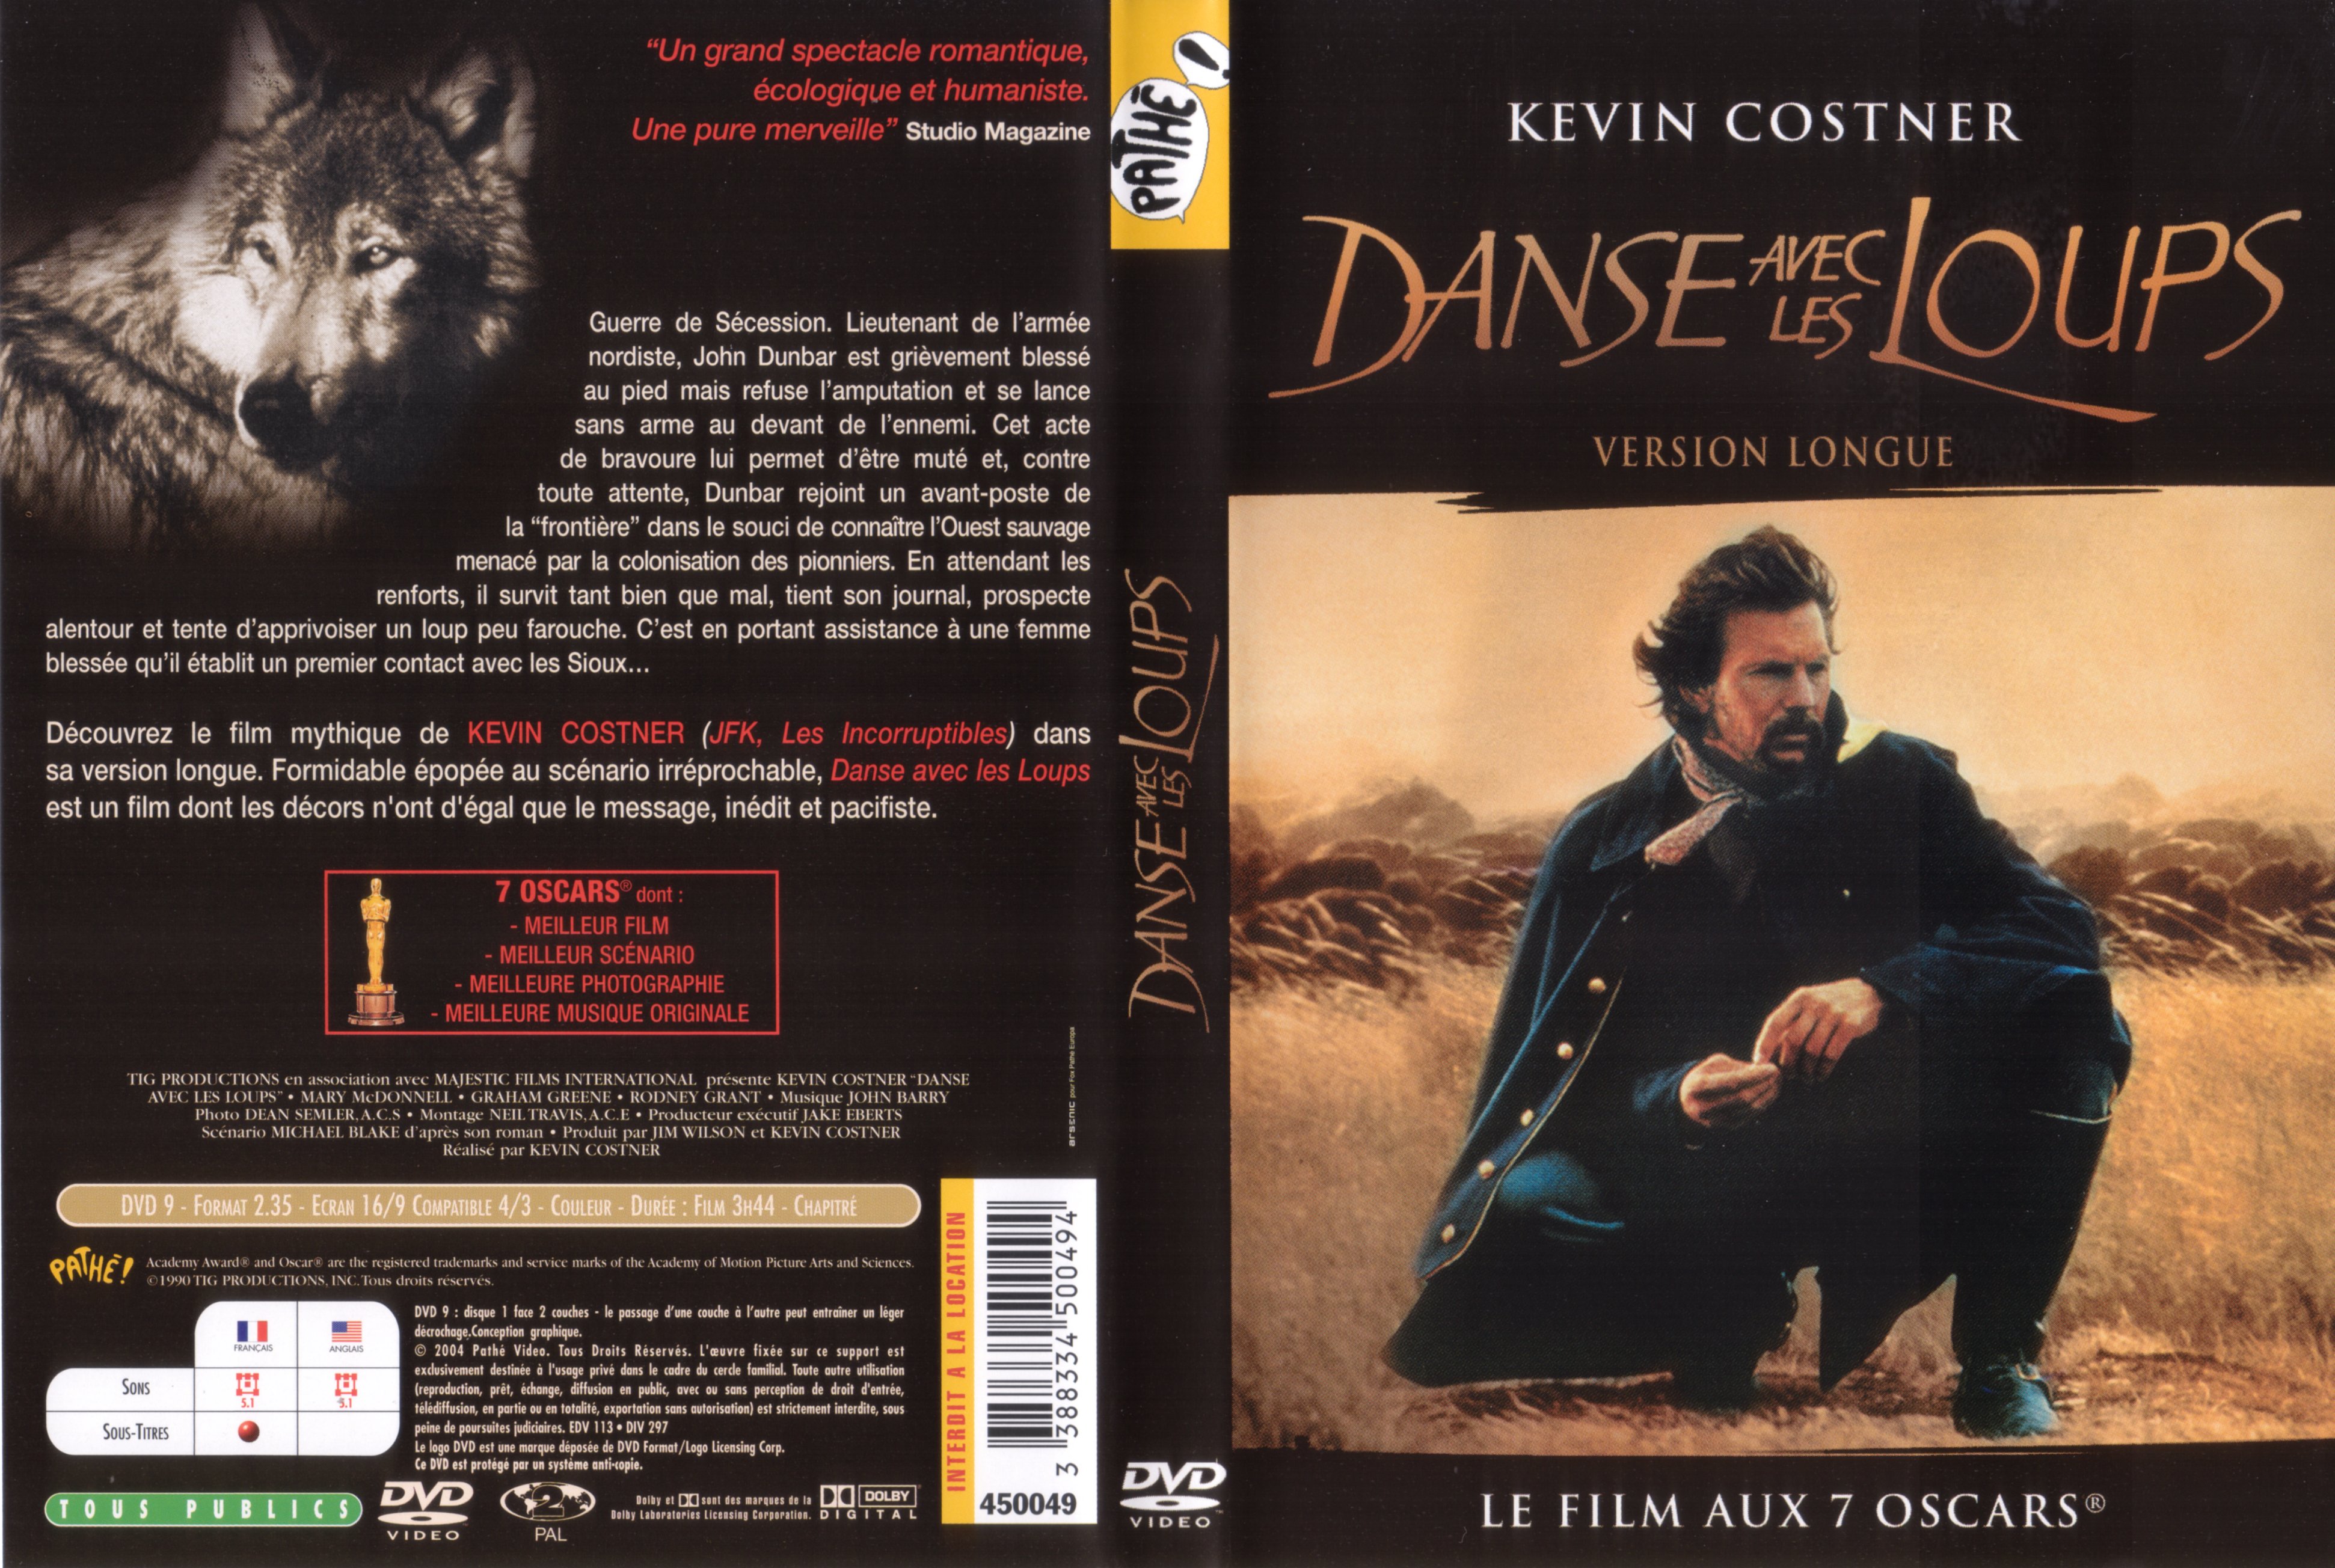 Jaquette DVD de Danse avec les loups v2 - Cinéma Passion